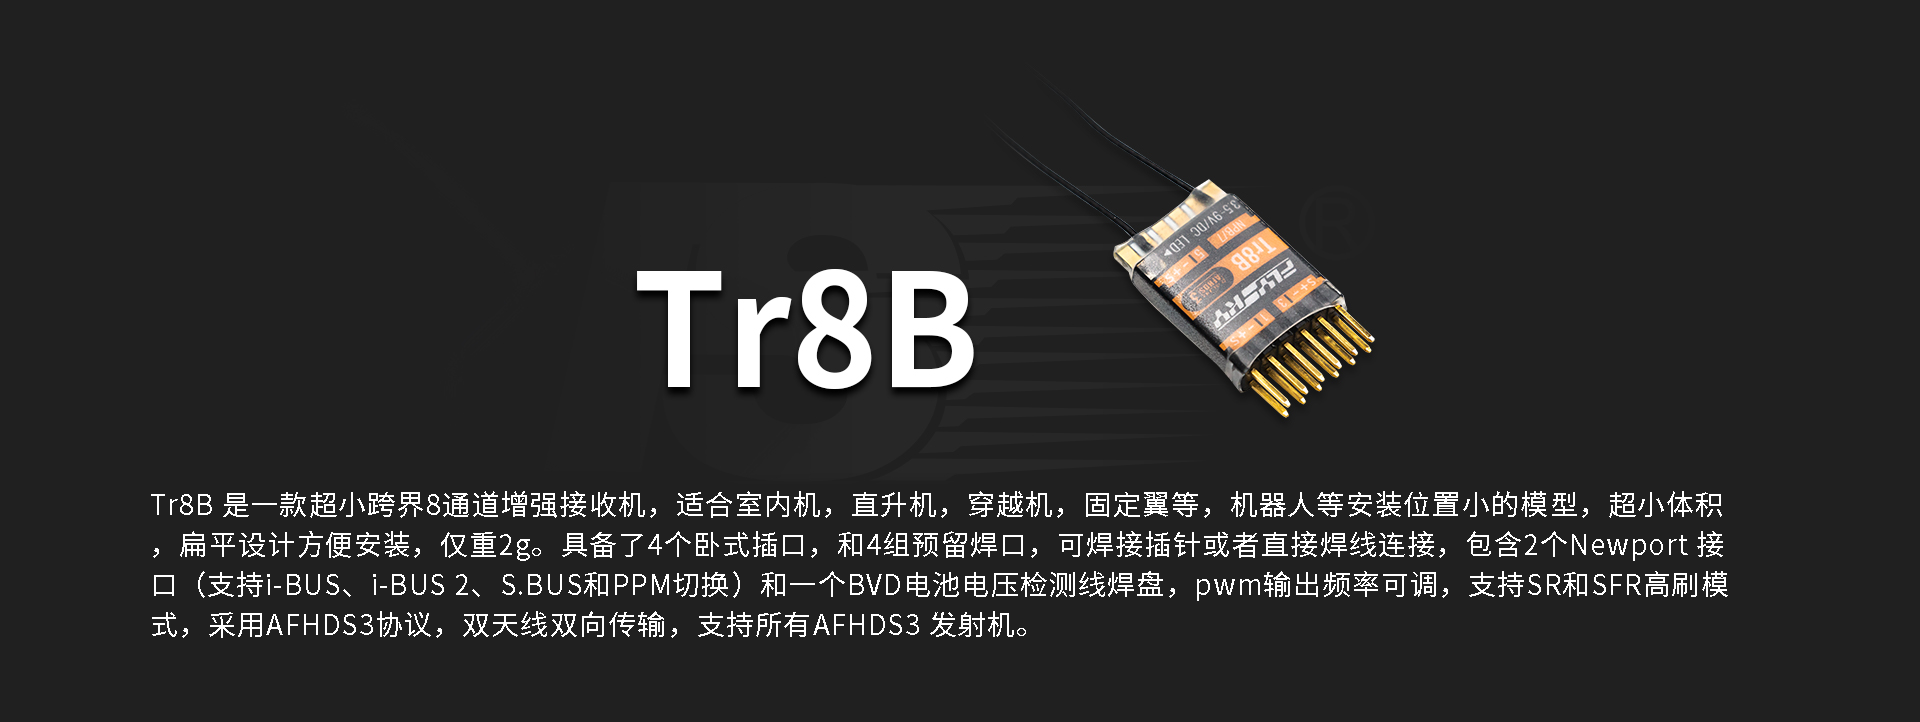 TR8B